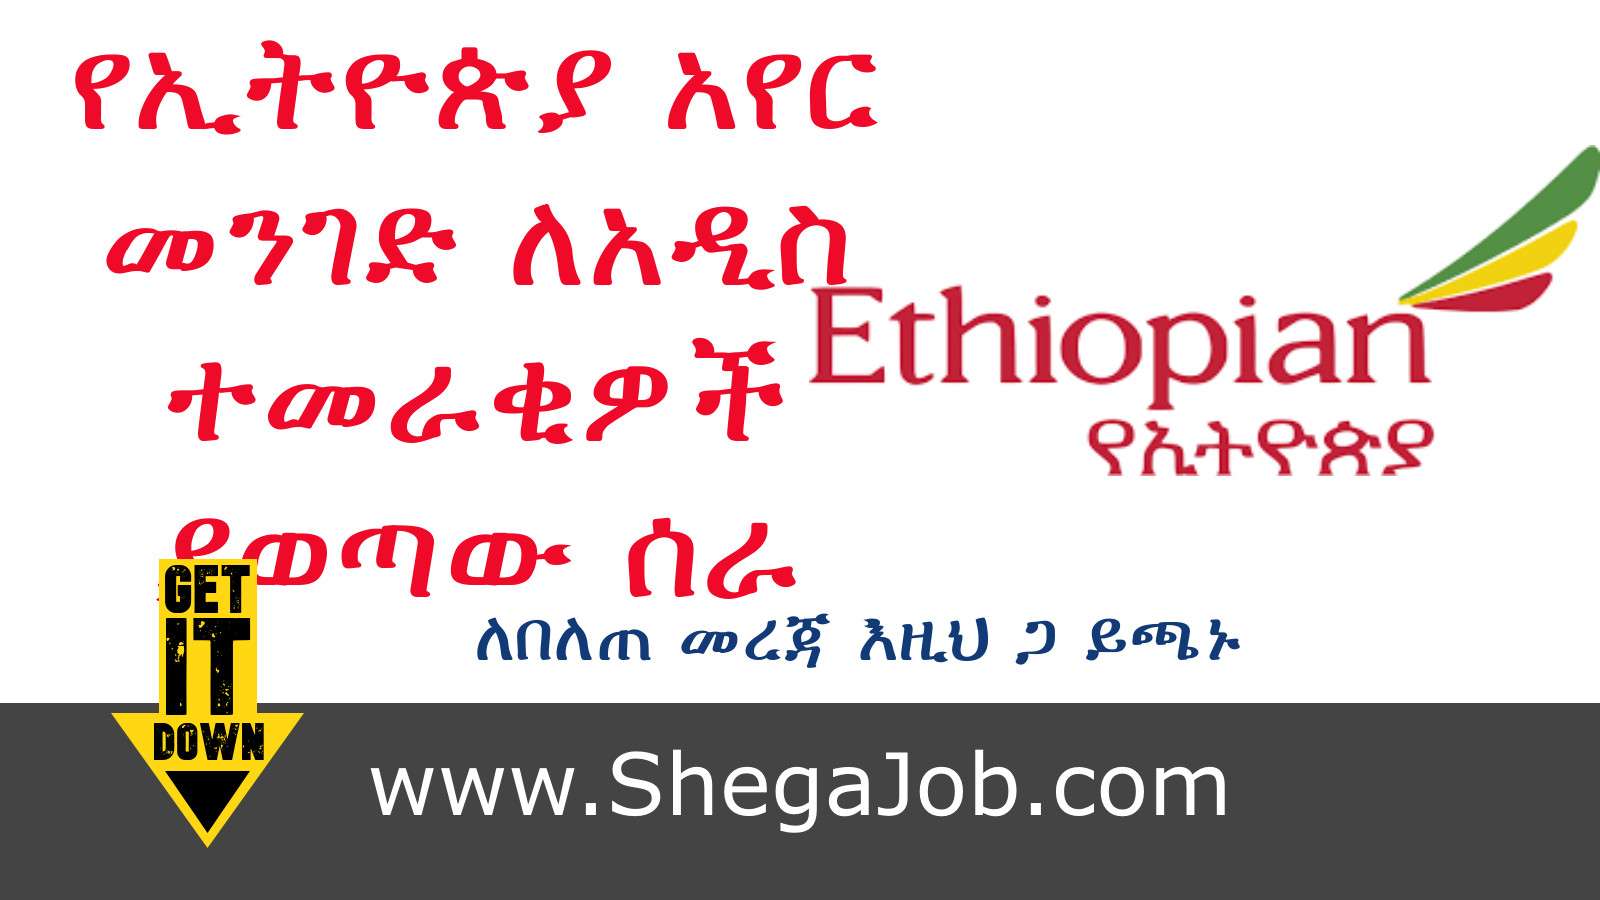 Ethiopian air lines job vacancies